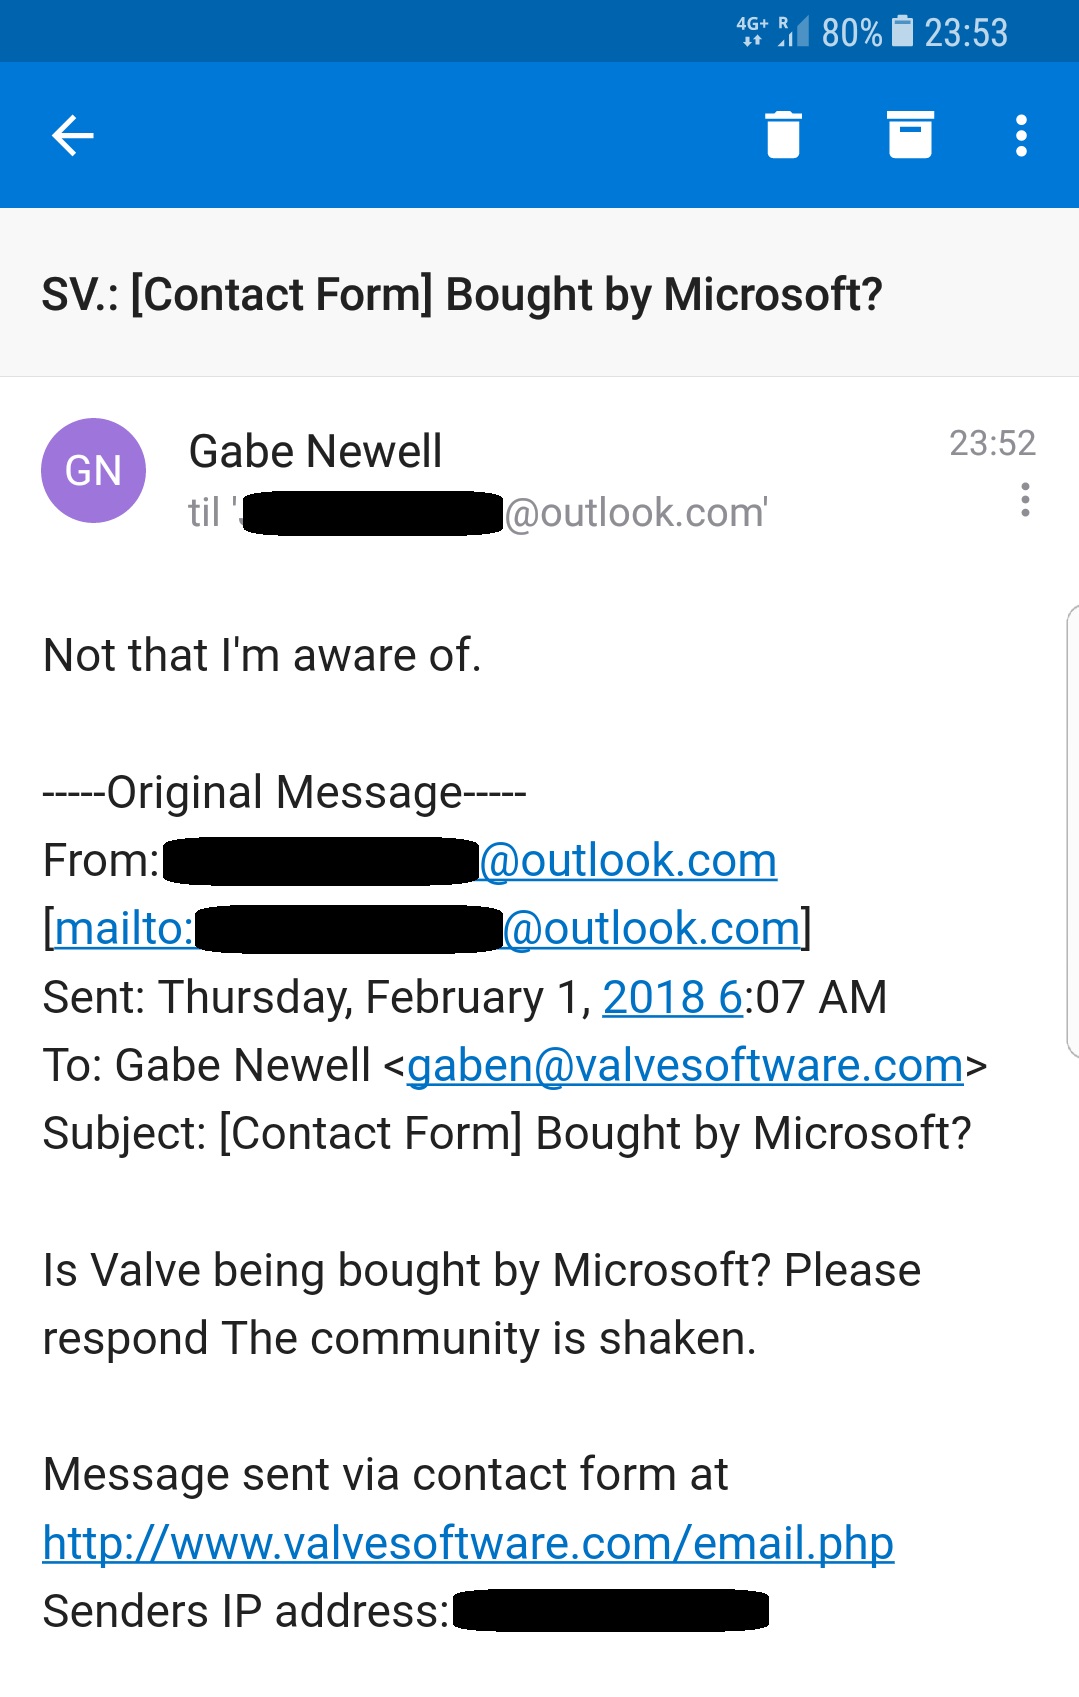 Gabe responds